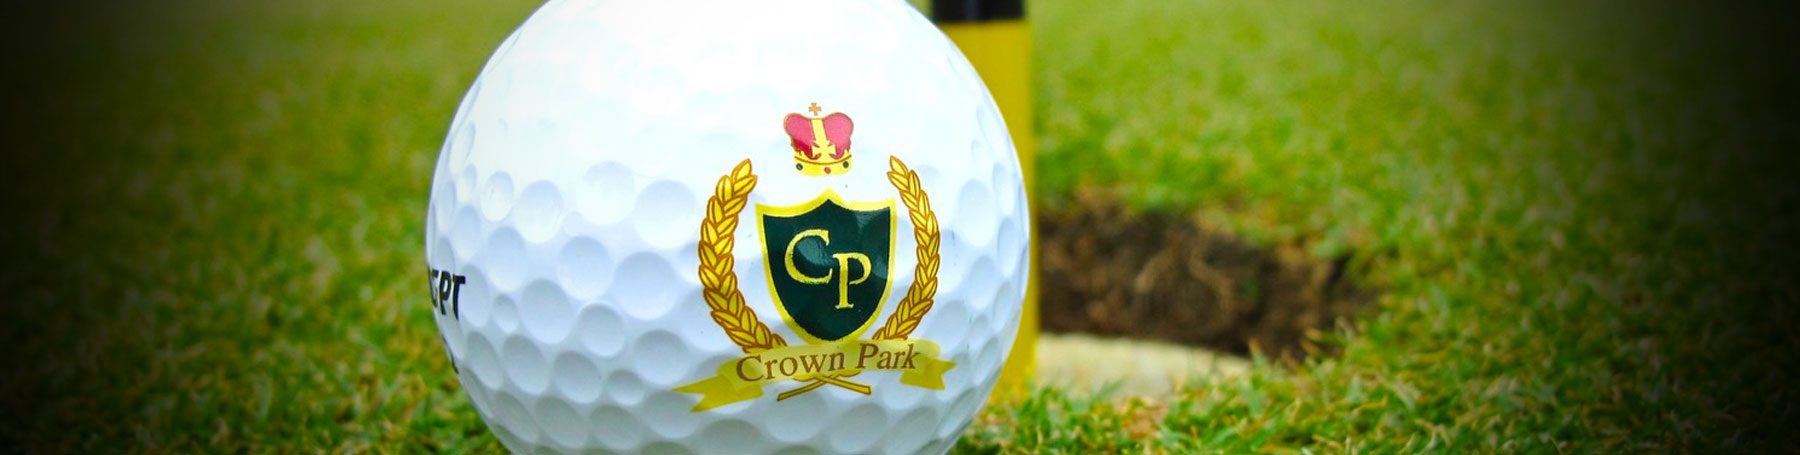 Crown Park Golf Course